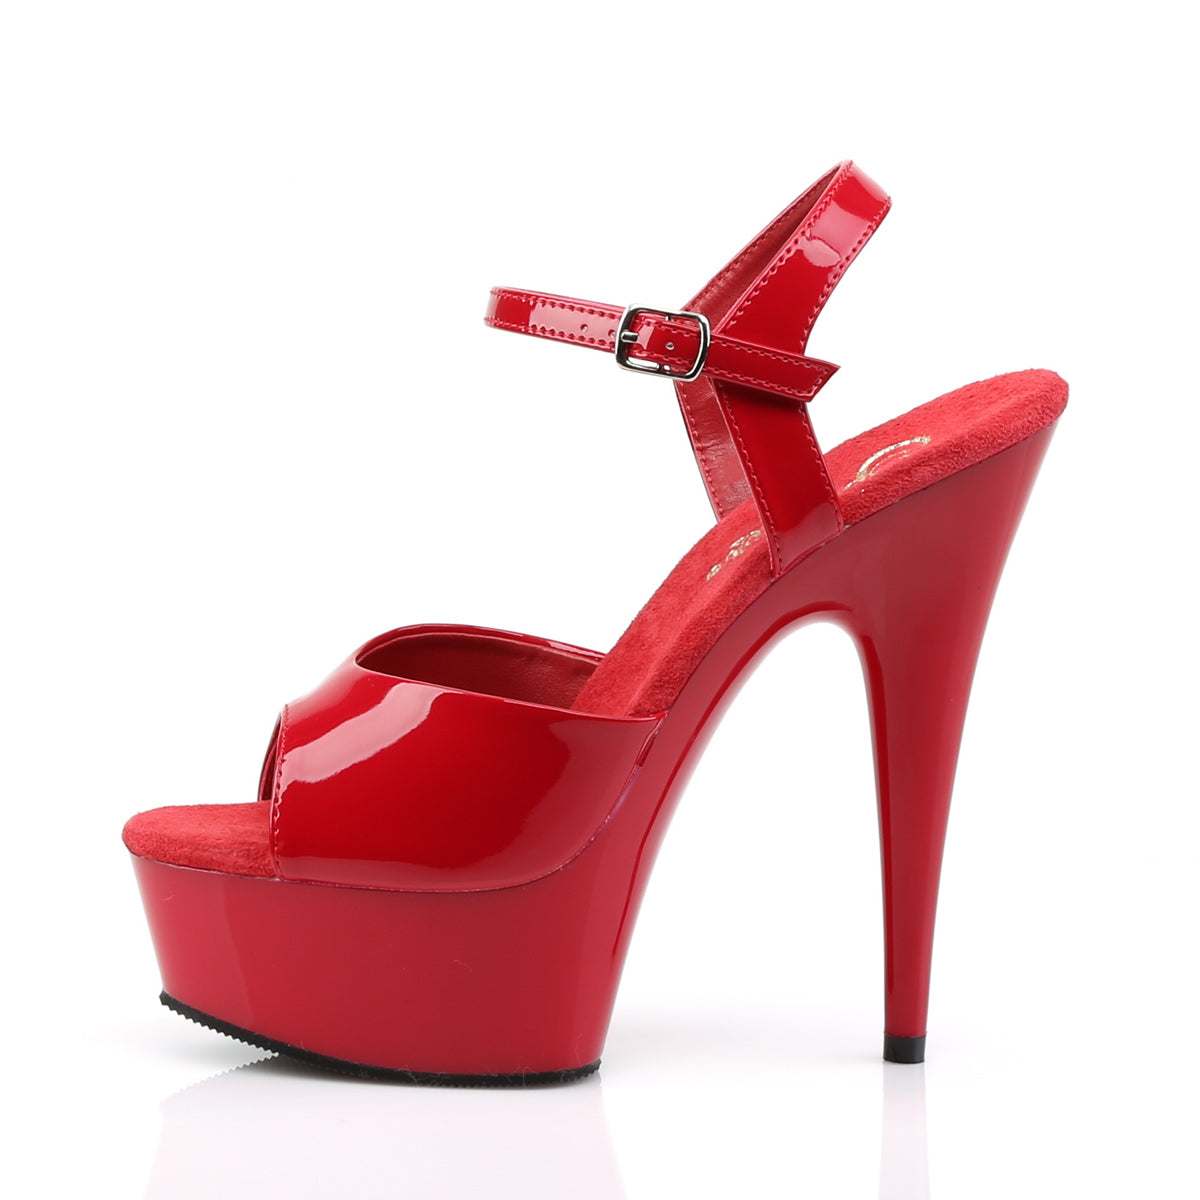 DELIGHT-609 Red Patent Platform Sandal Pleaser